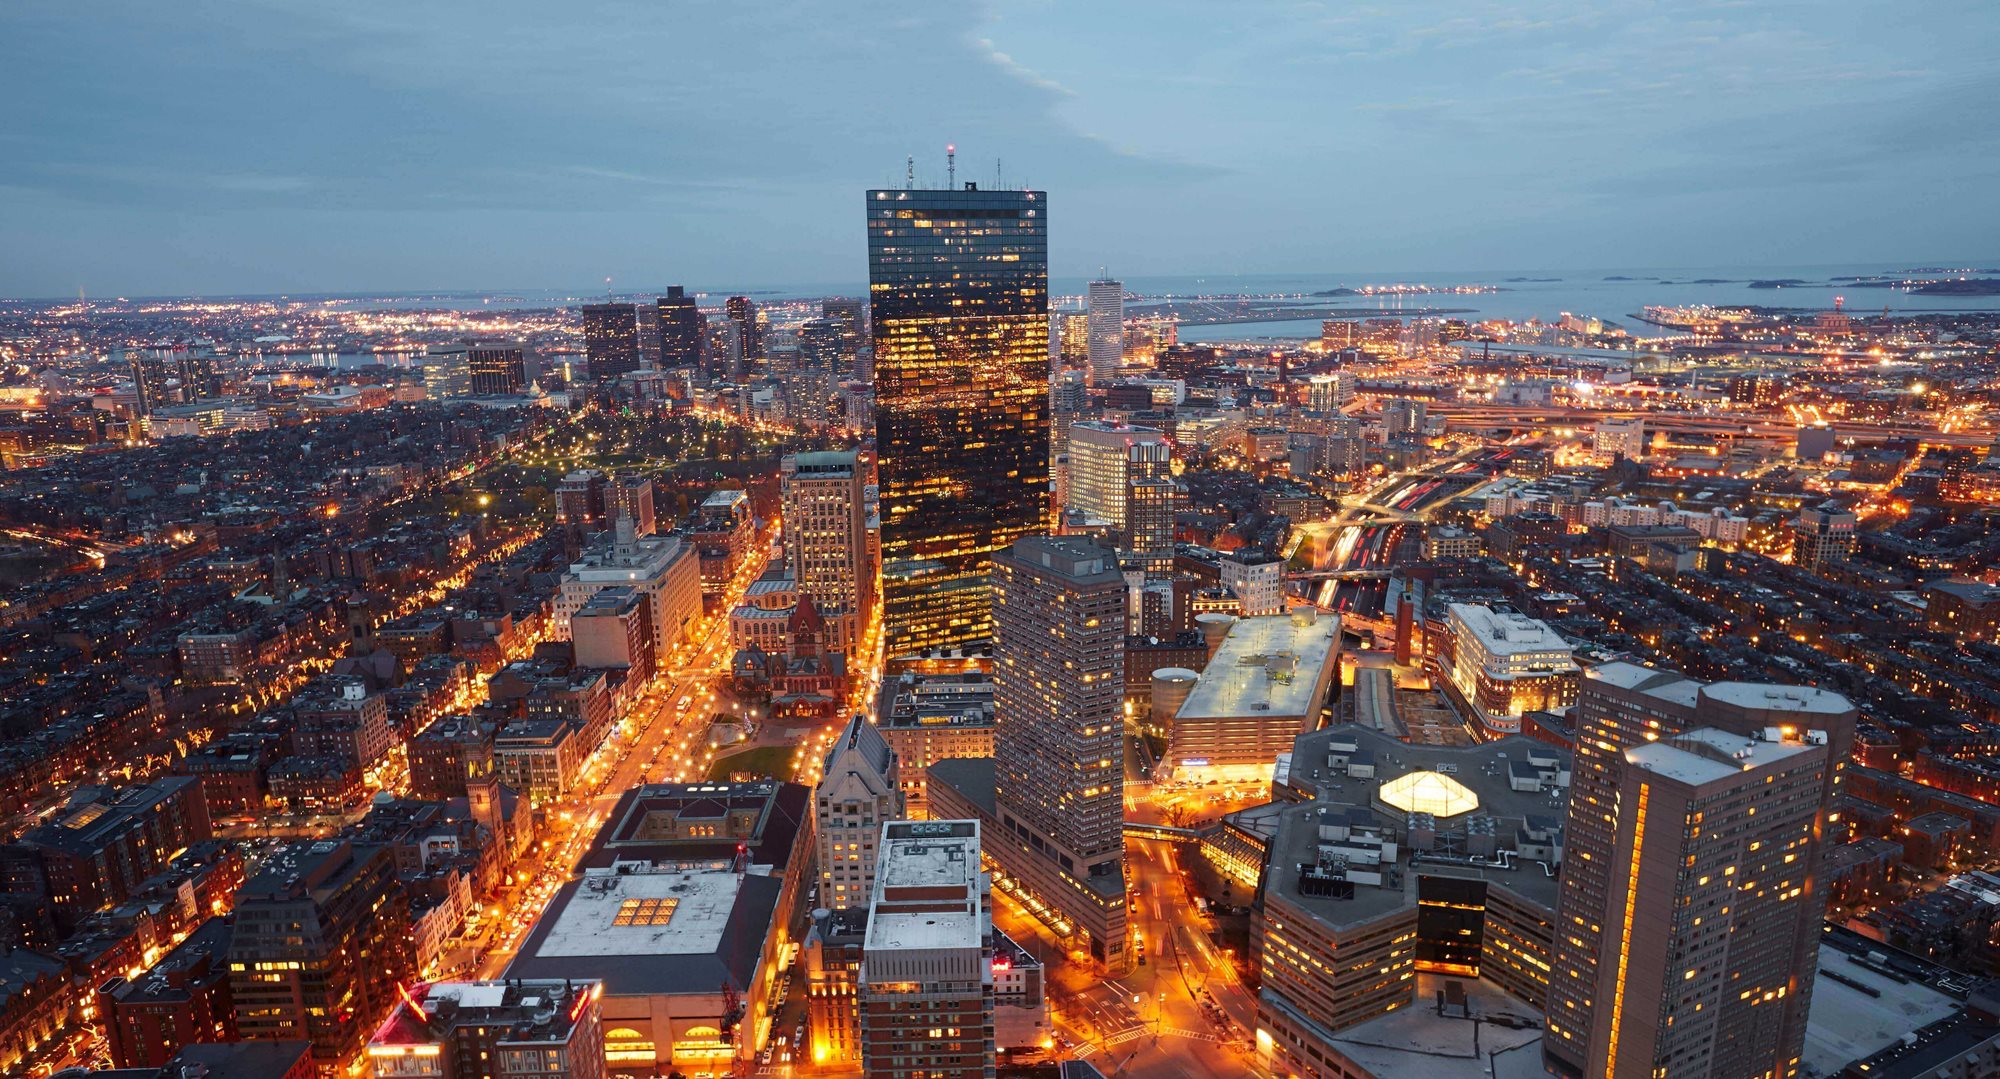 Vista aérea nocturna de Boston